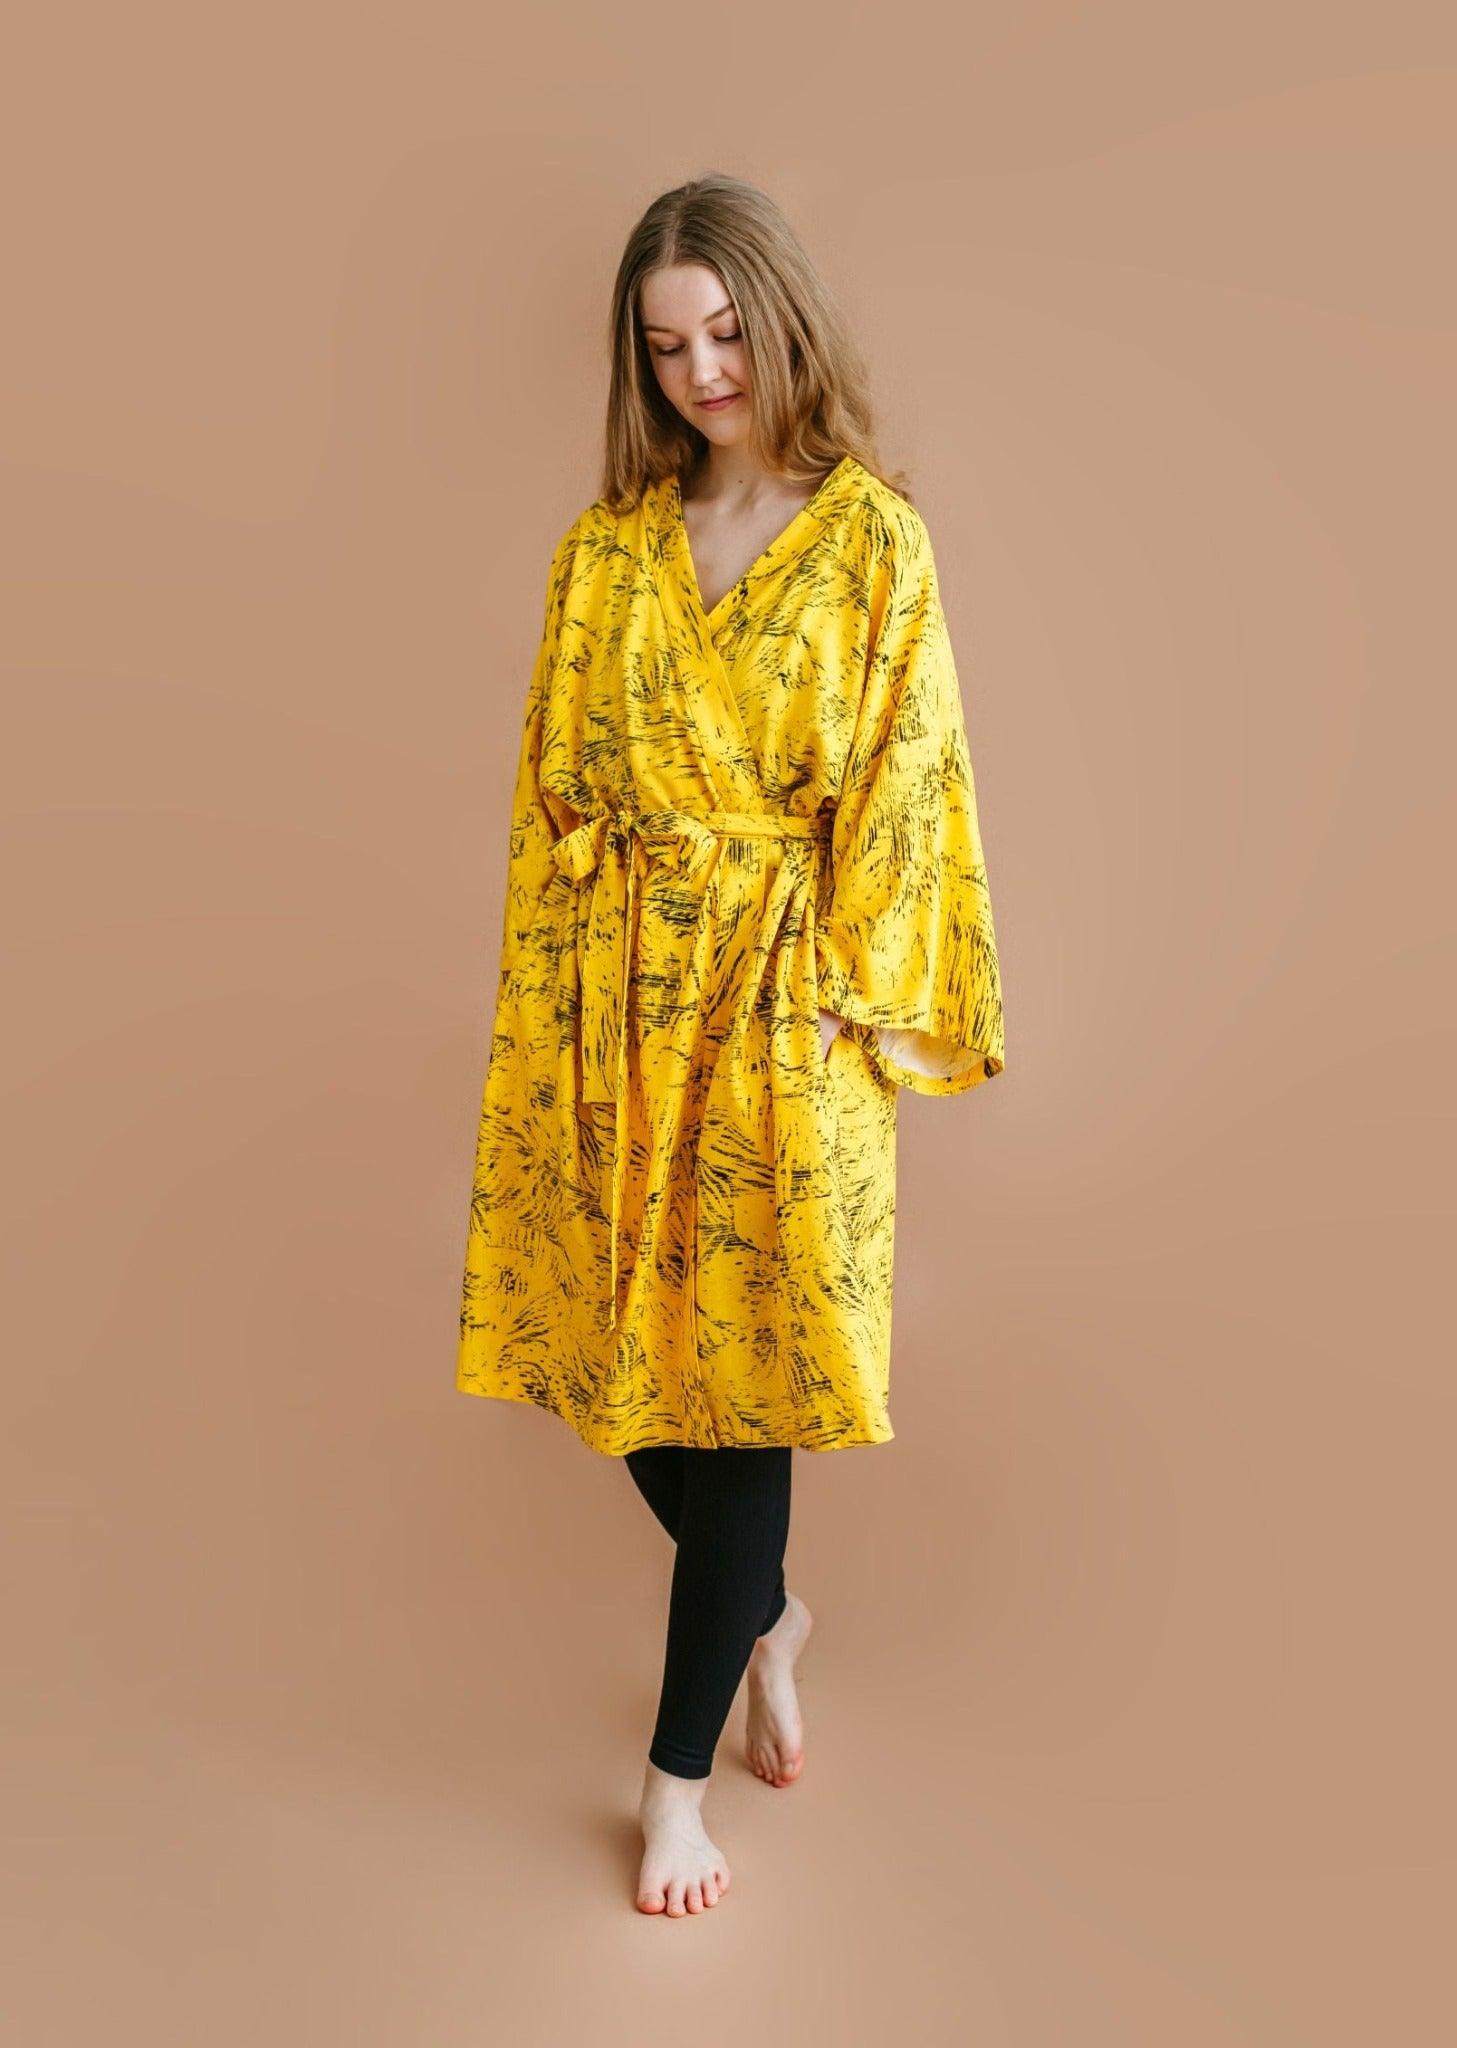 Kollane kimono - Kuldniit